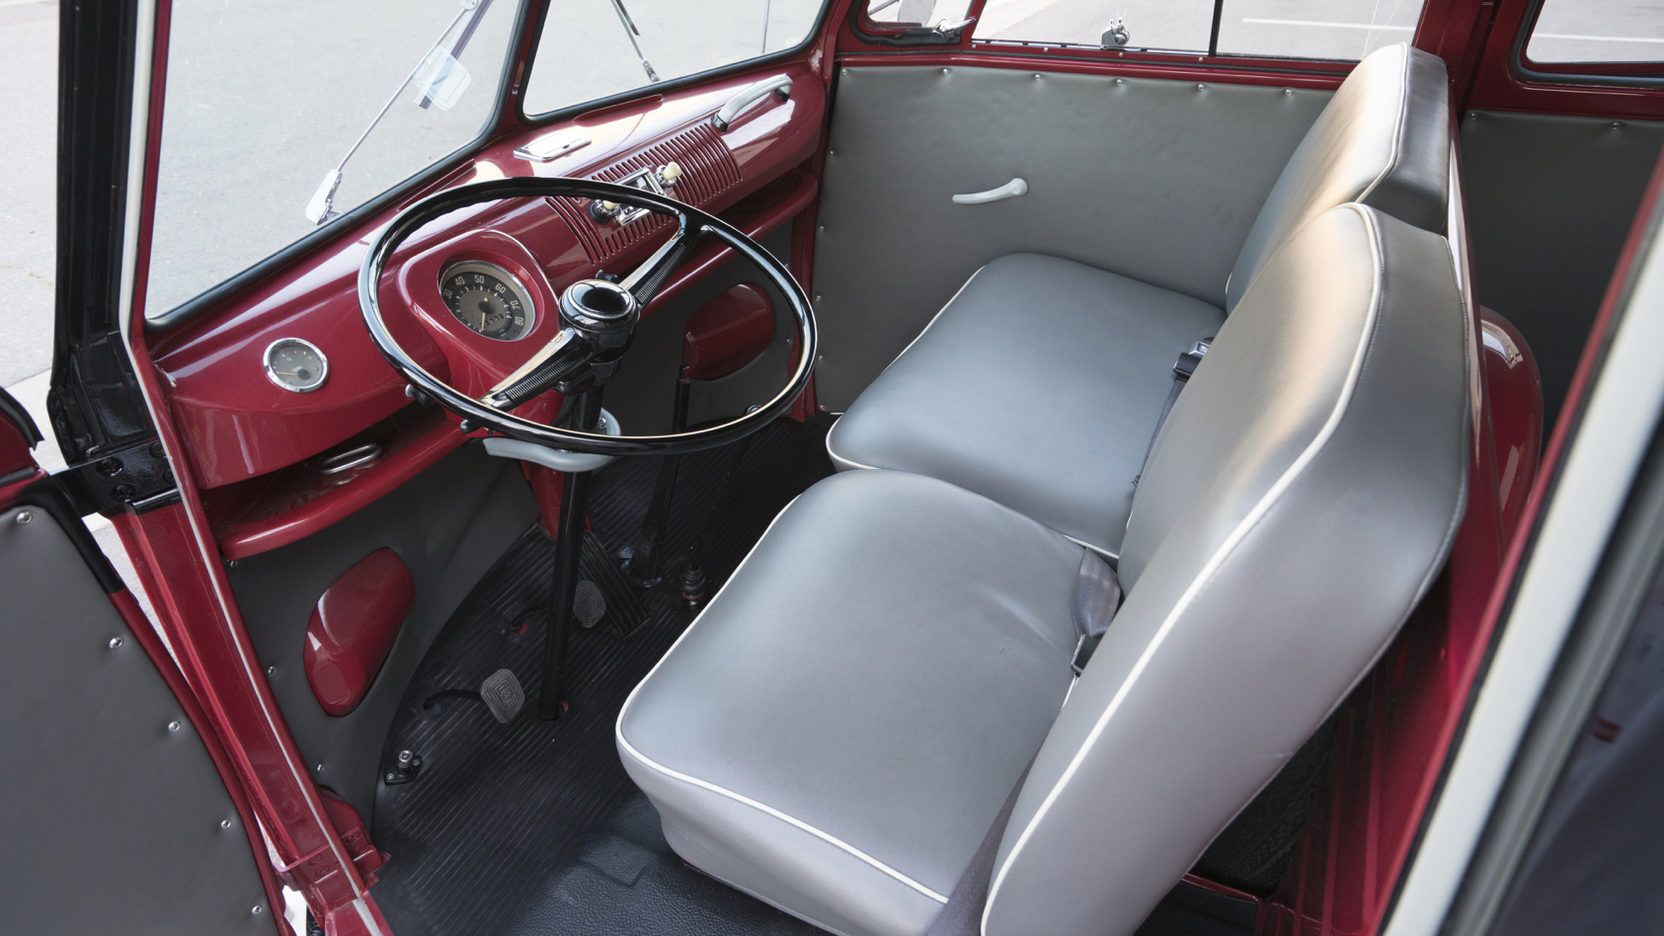 1962 Volkswagen Double Cab Transporter